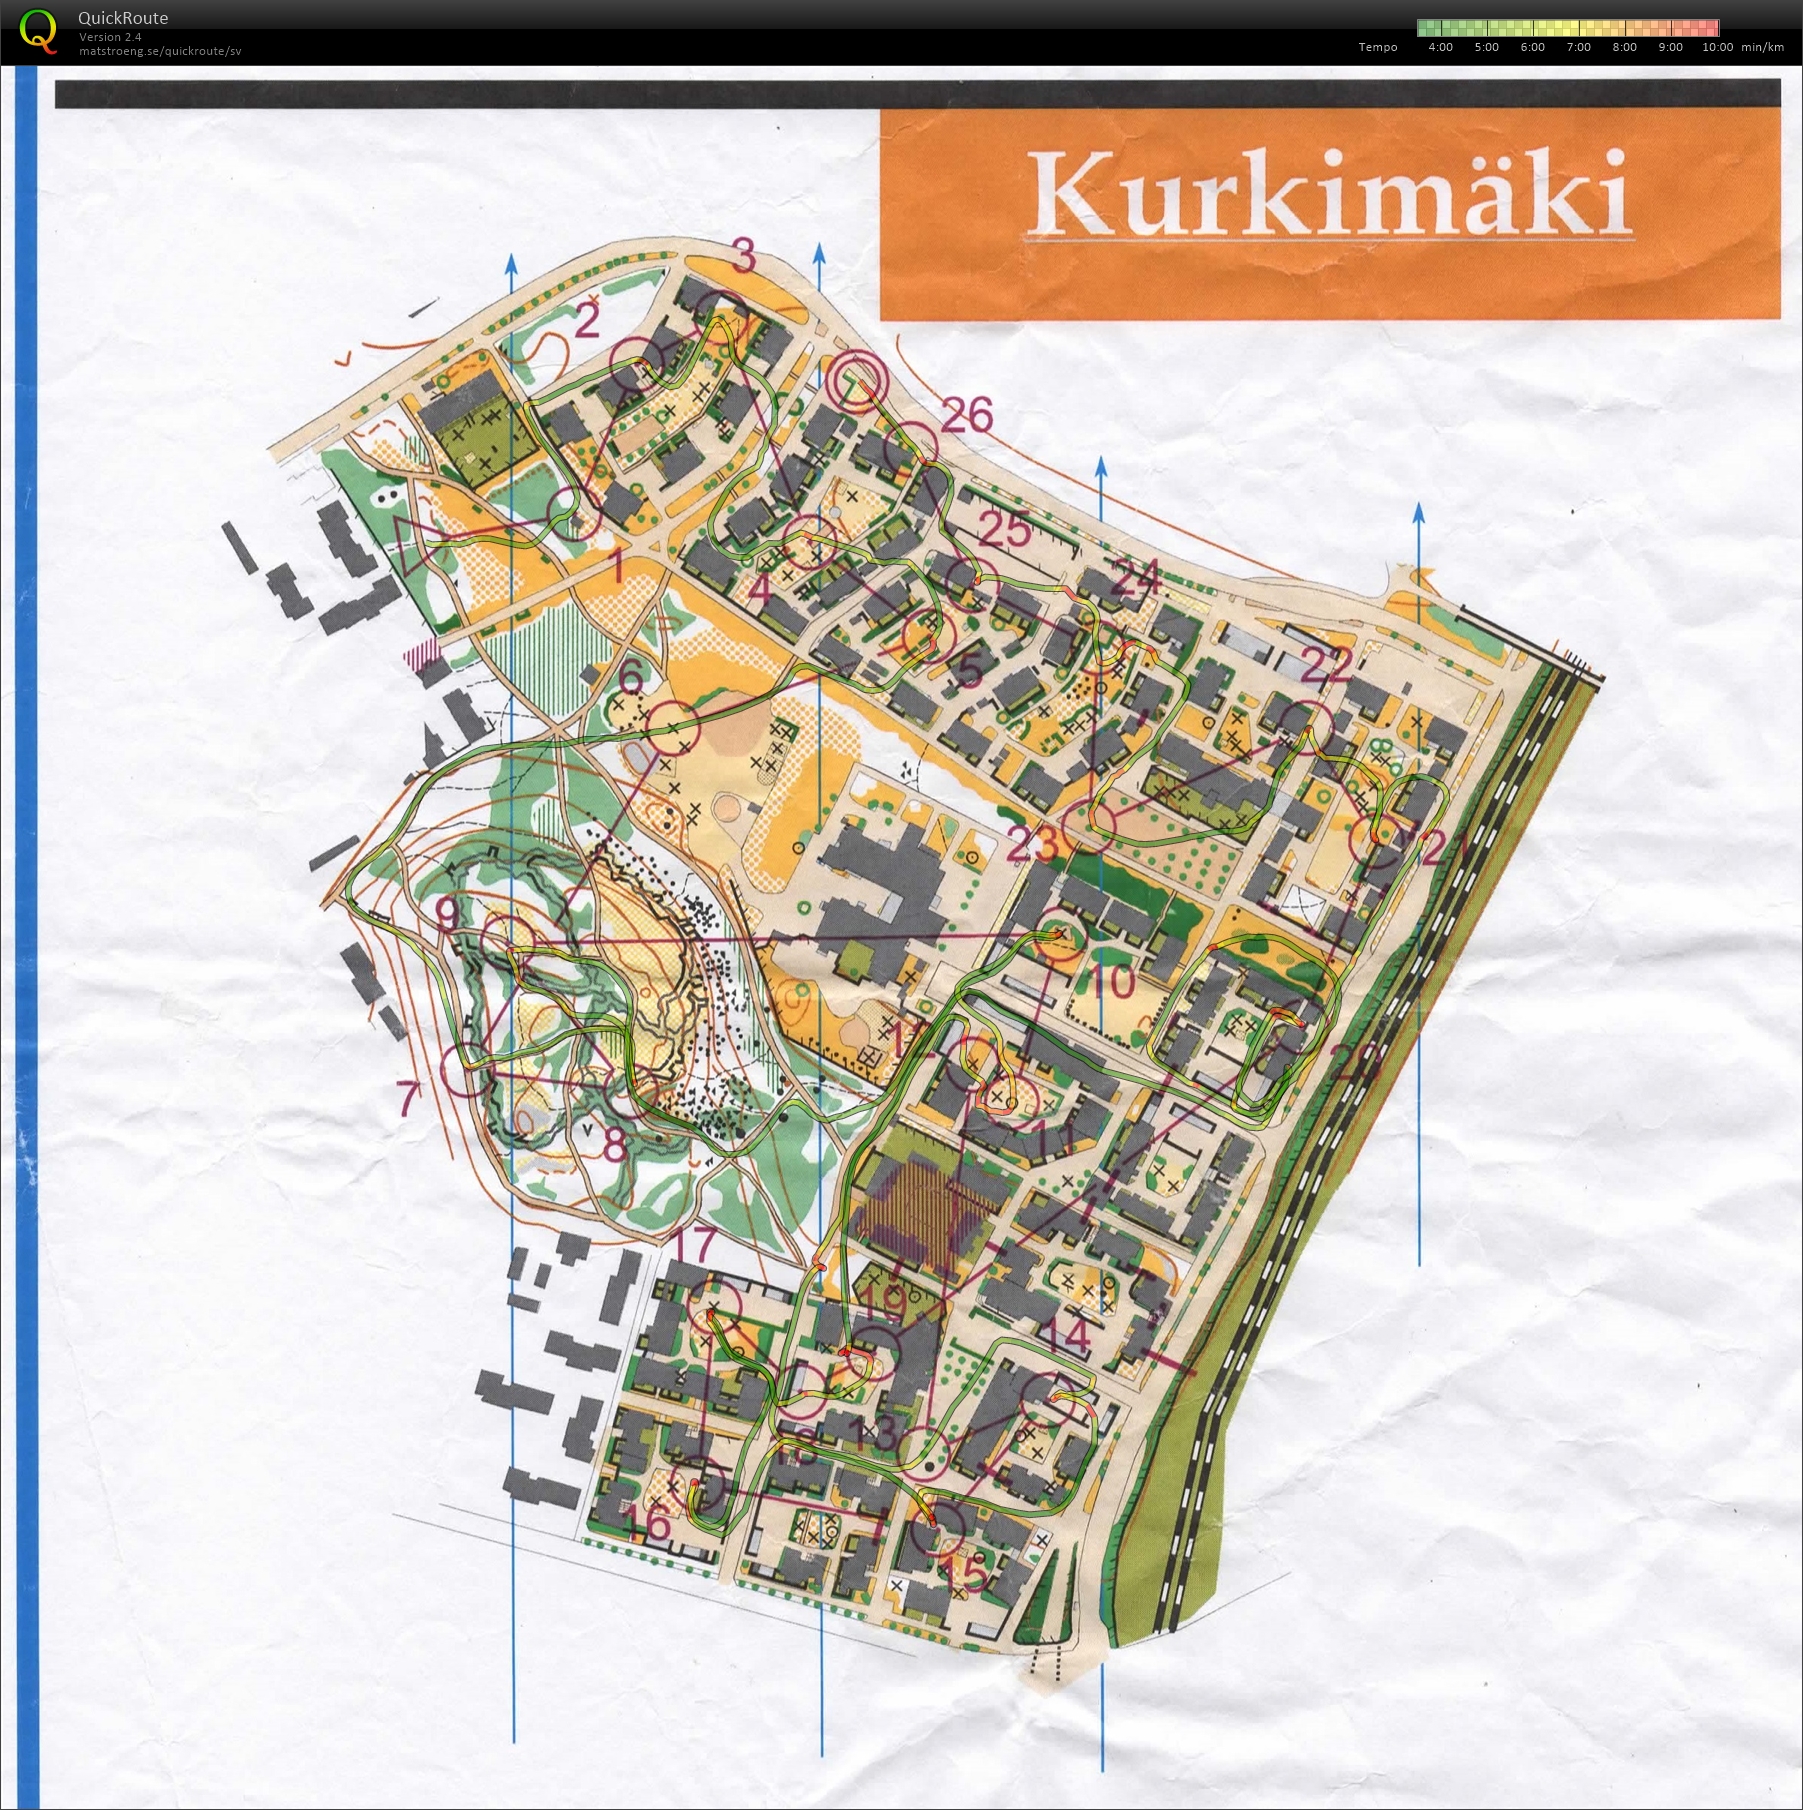 Kurkimäki sprint (17-12-2015)